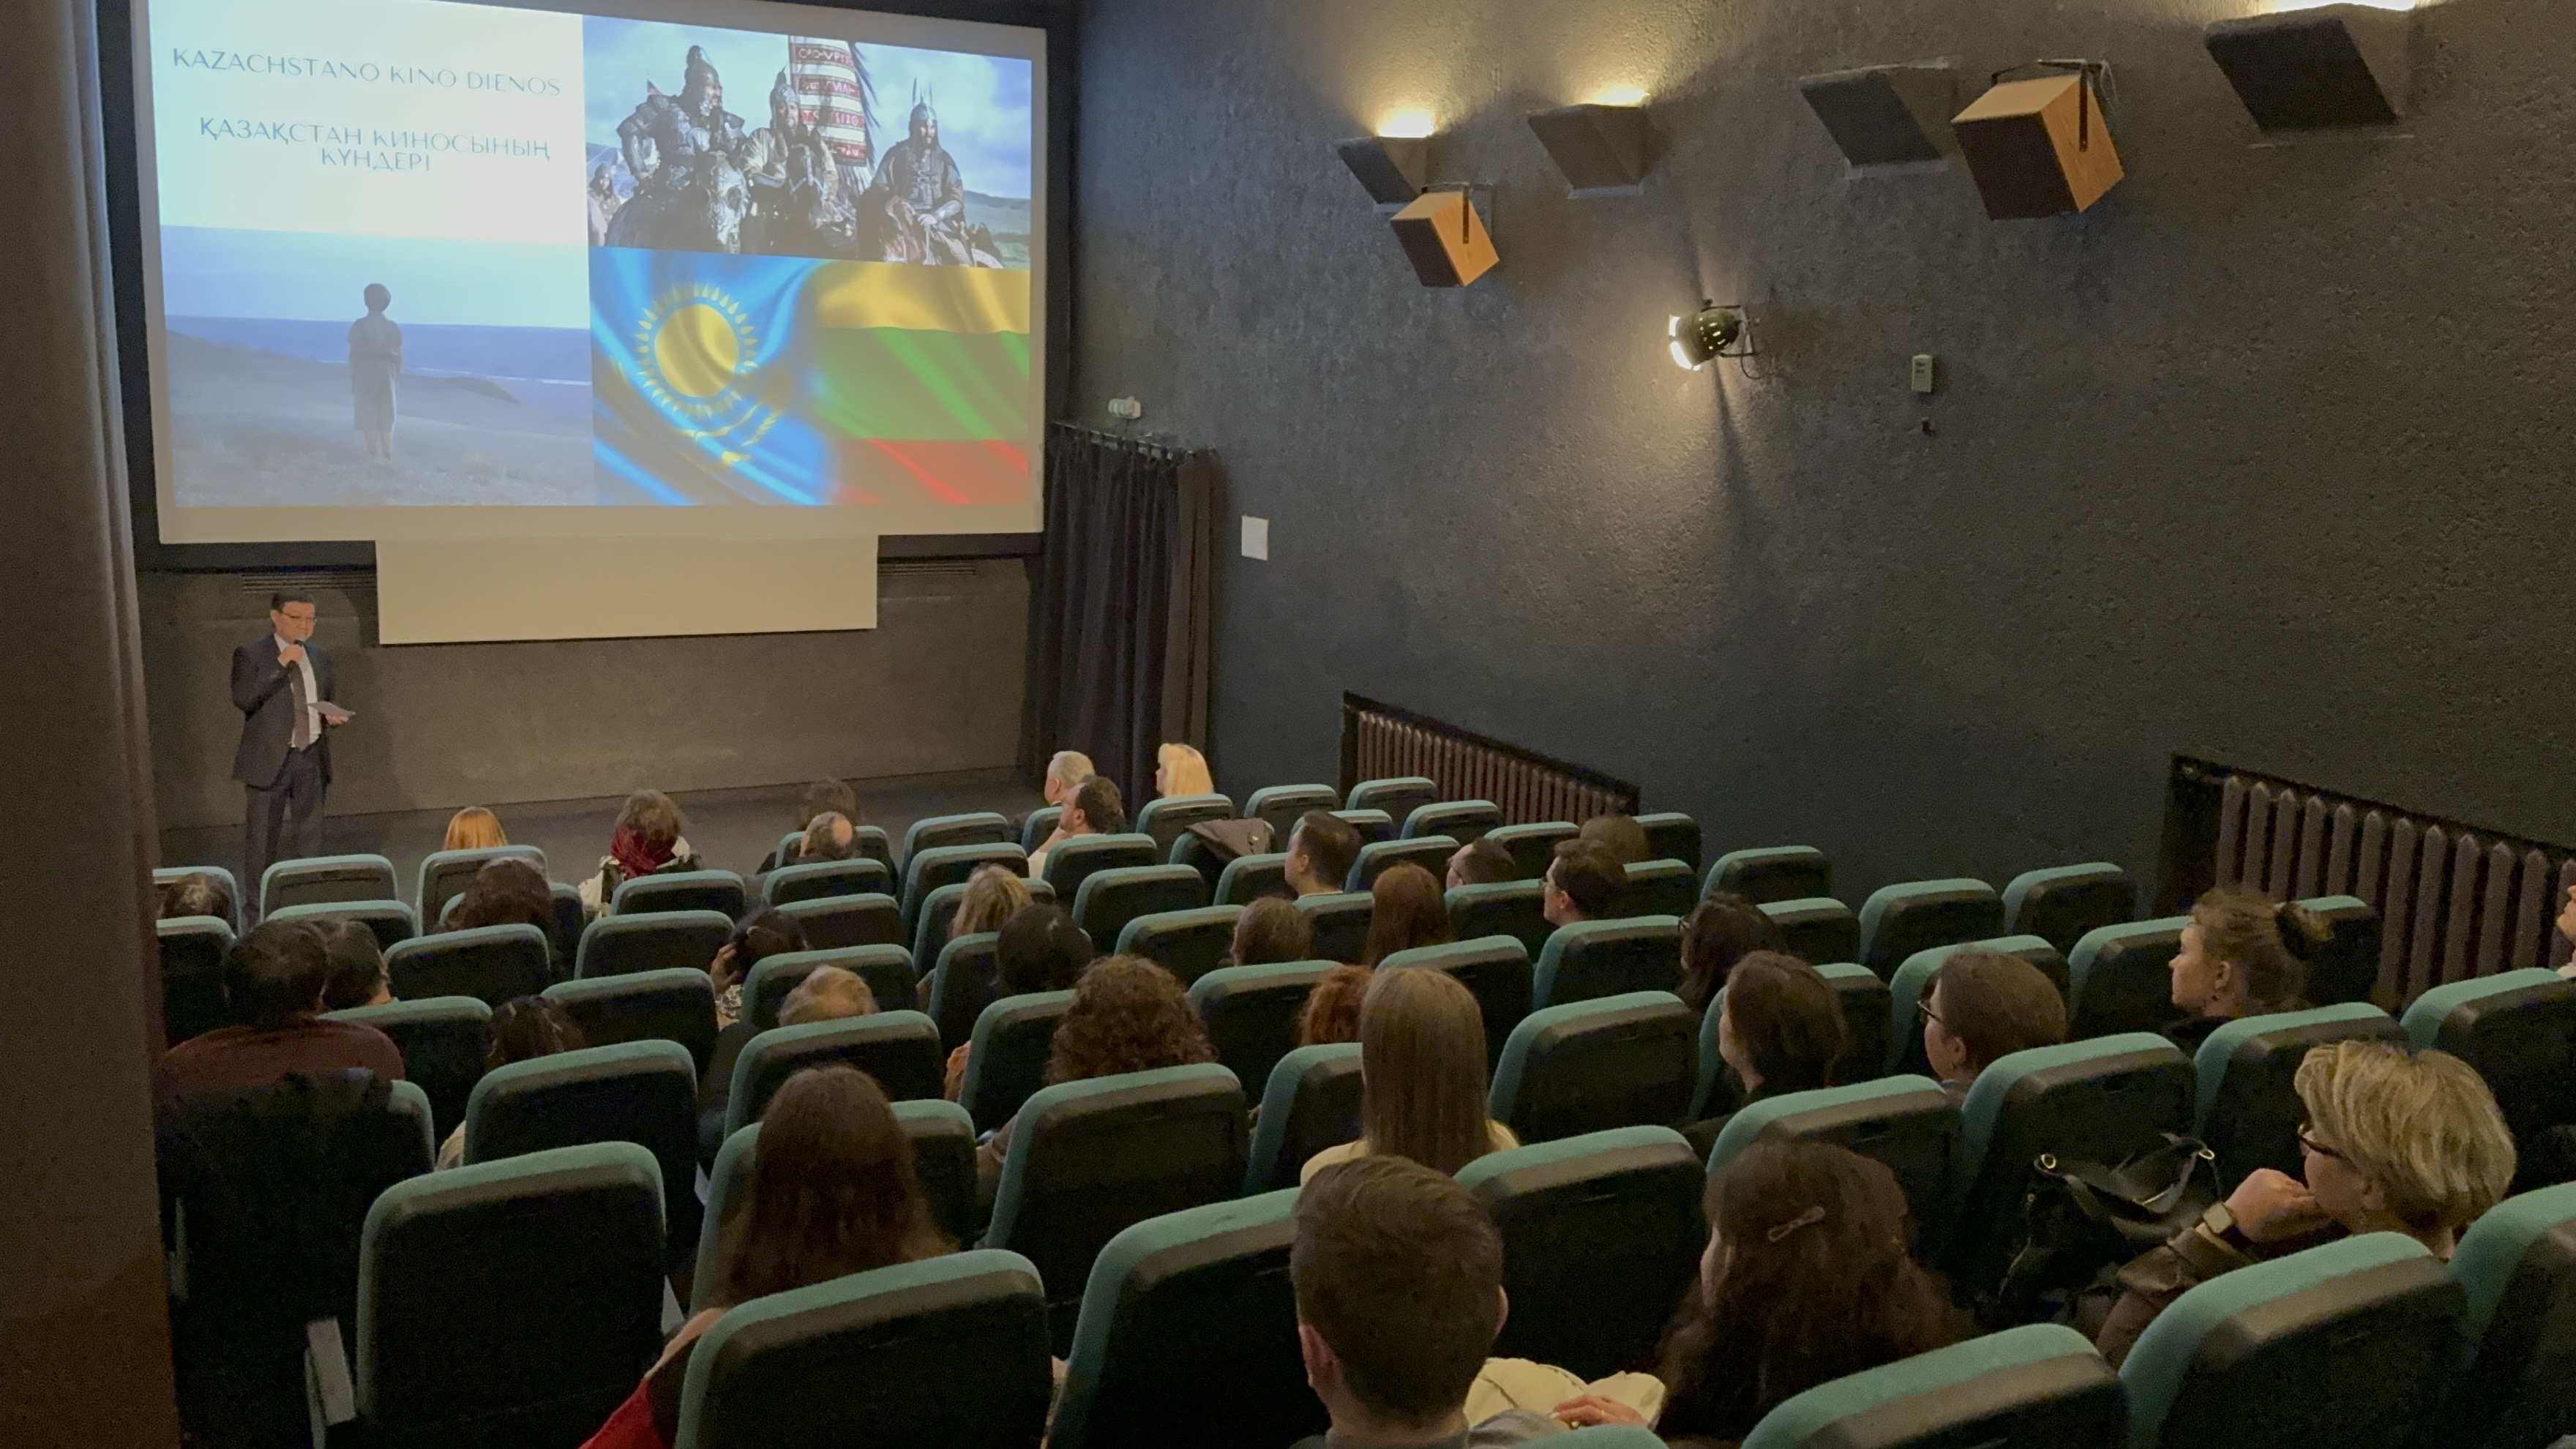 Kazakh Cinema Days were held in Vilnius